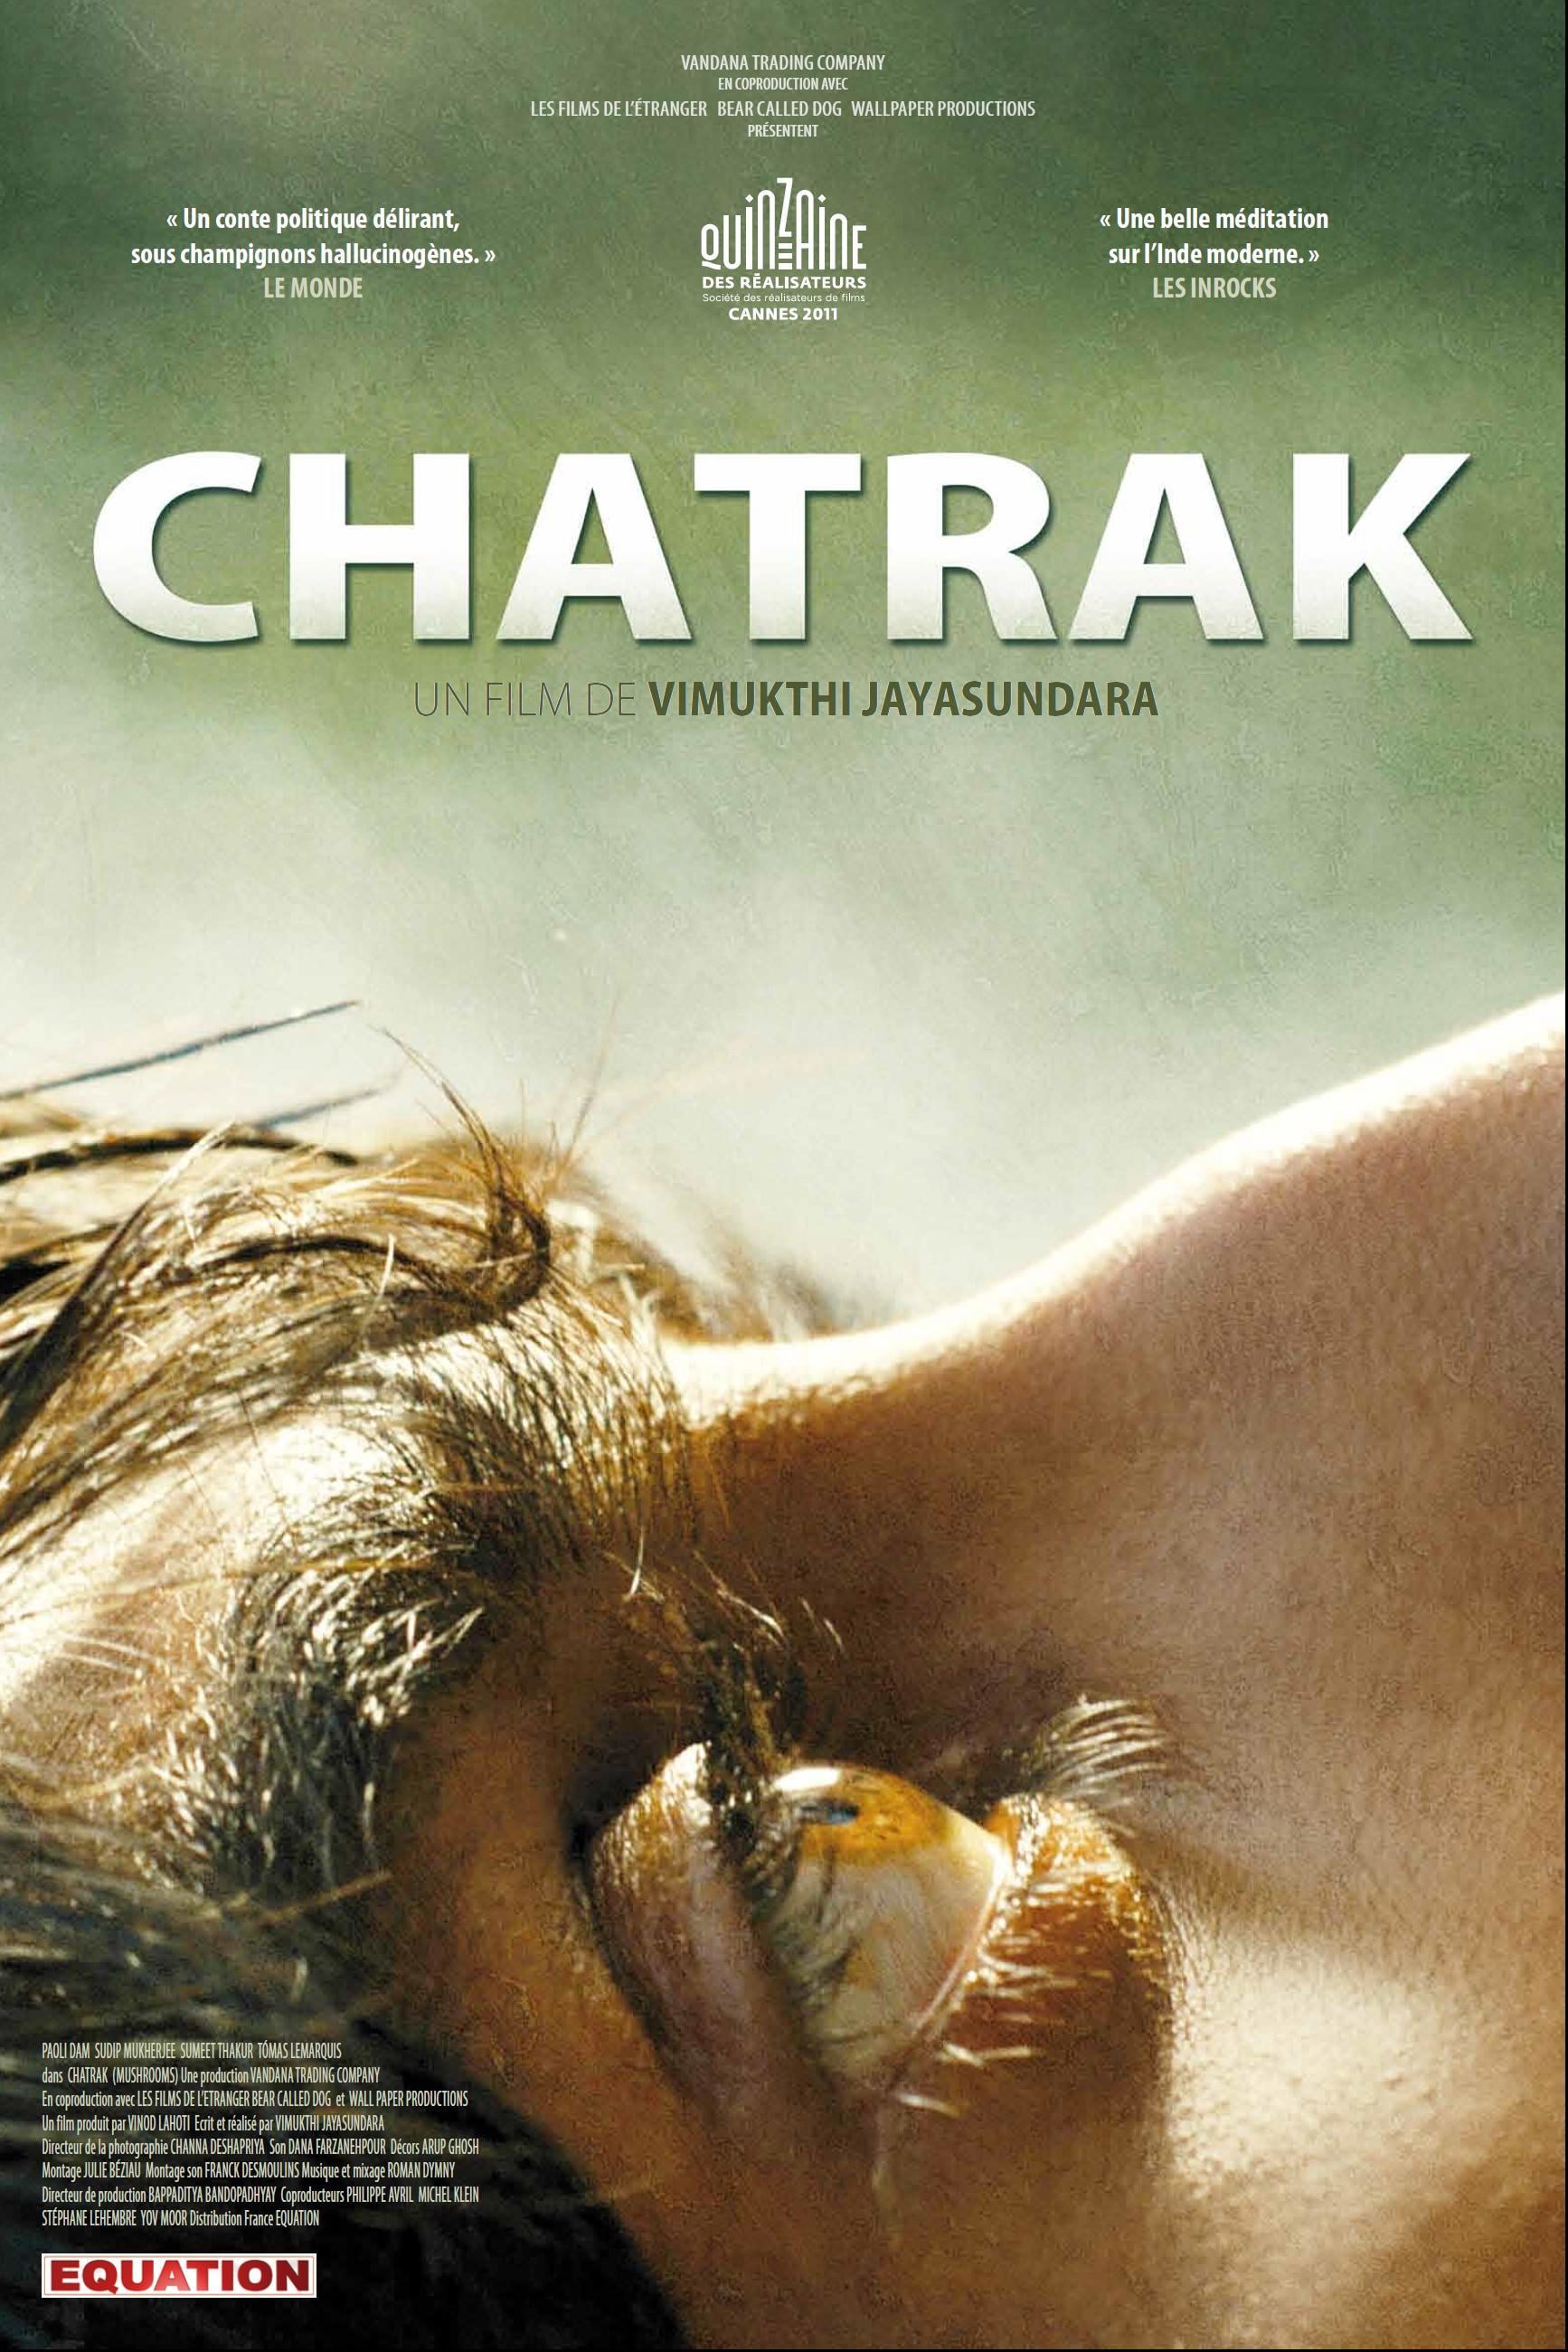 Chatrak full movie watch online